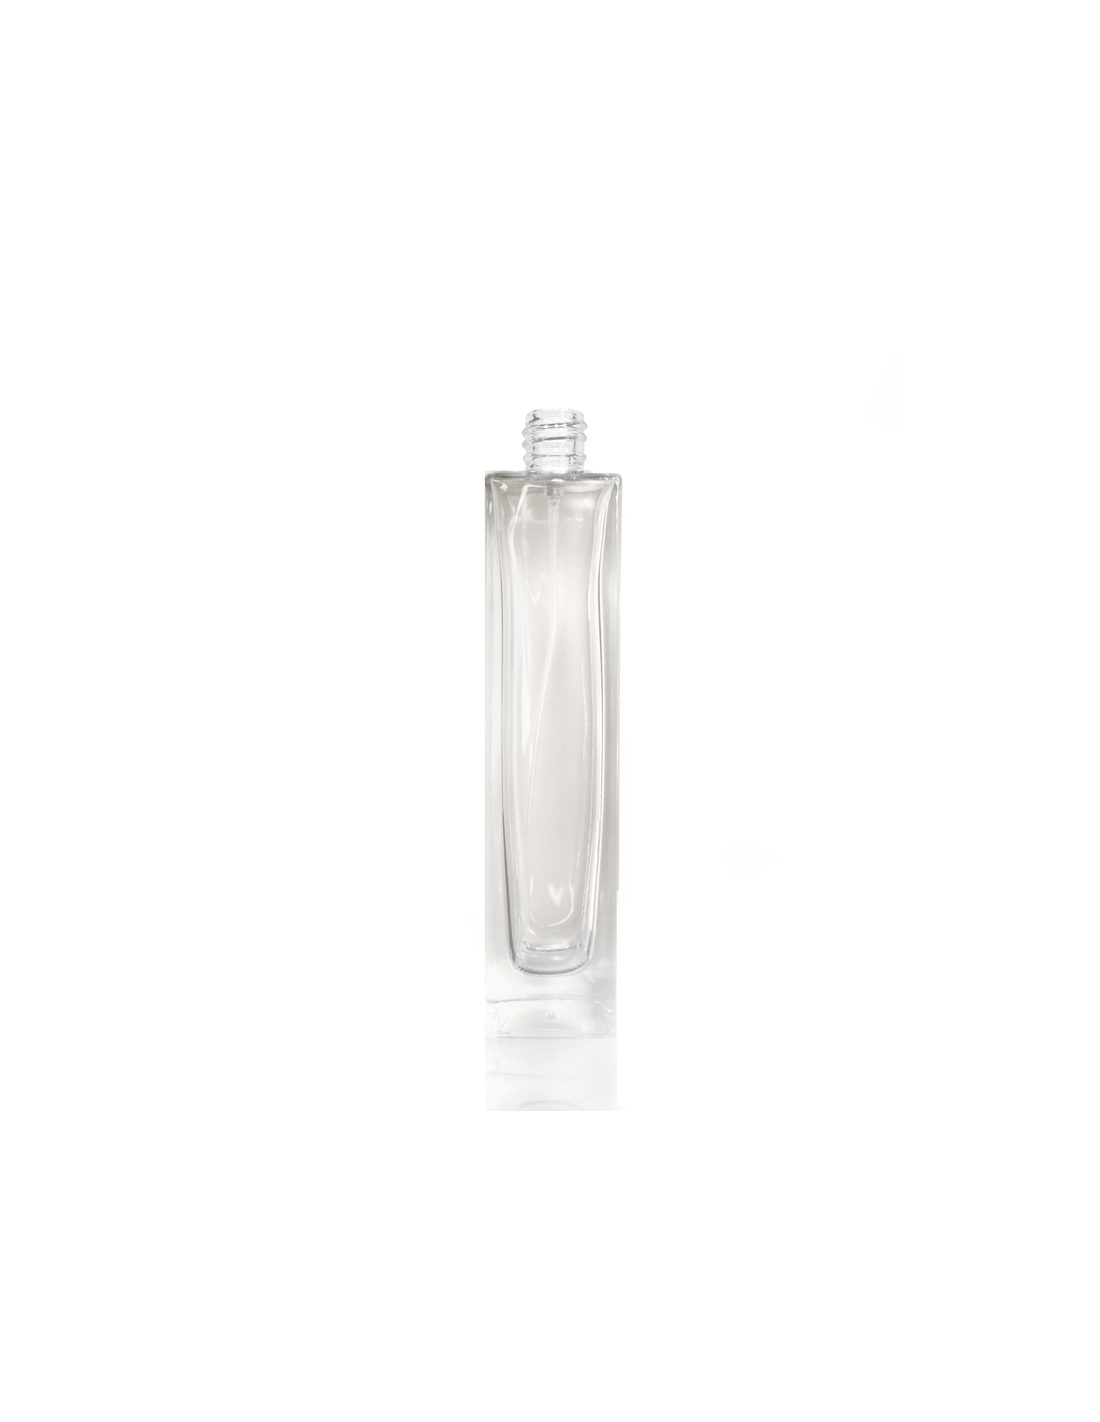 Scatola bottiglie profumo di vetro - KLEE 100ml - Profumi alla spina